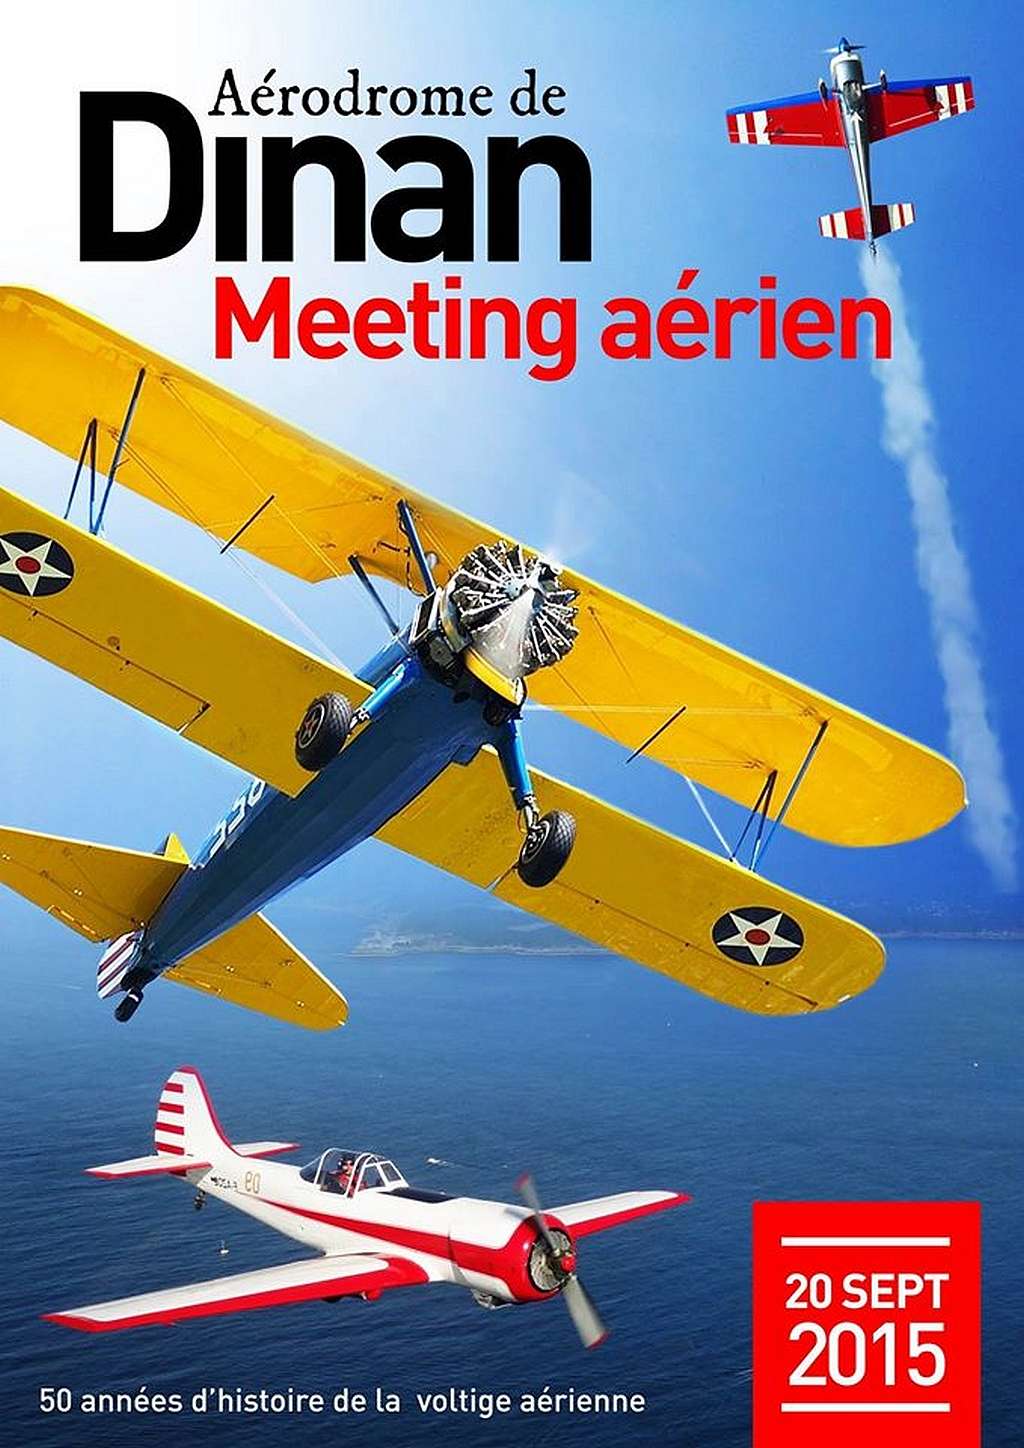 Aérodrome de Dinan - Trélivan, Meeting Aerien en bretagne 2015,Meeting Aérien DINAN 2015,Meeting Aérien DINAN, Meeting aerien 2015 